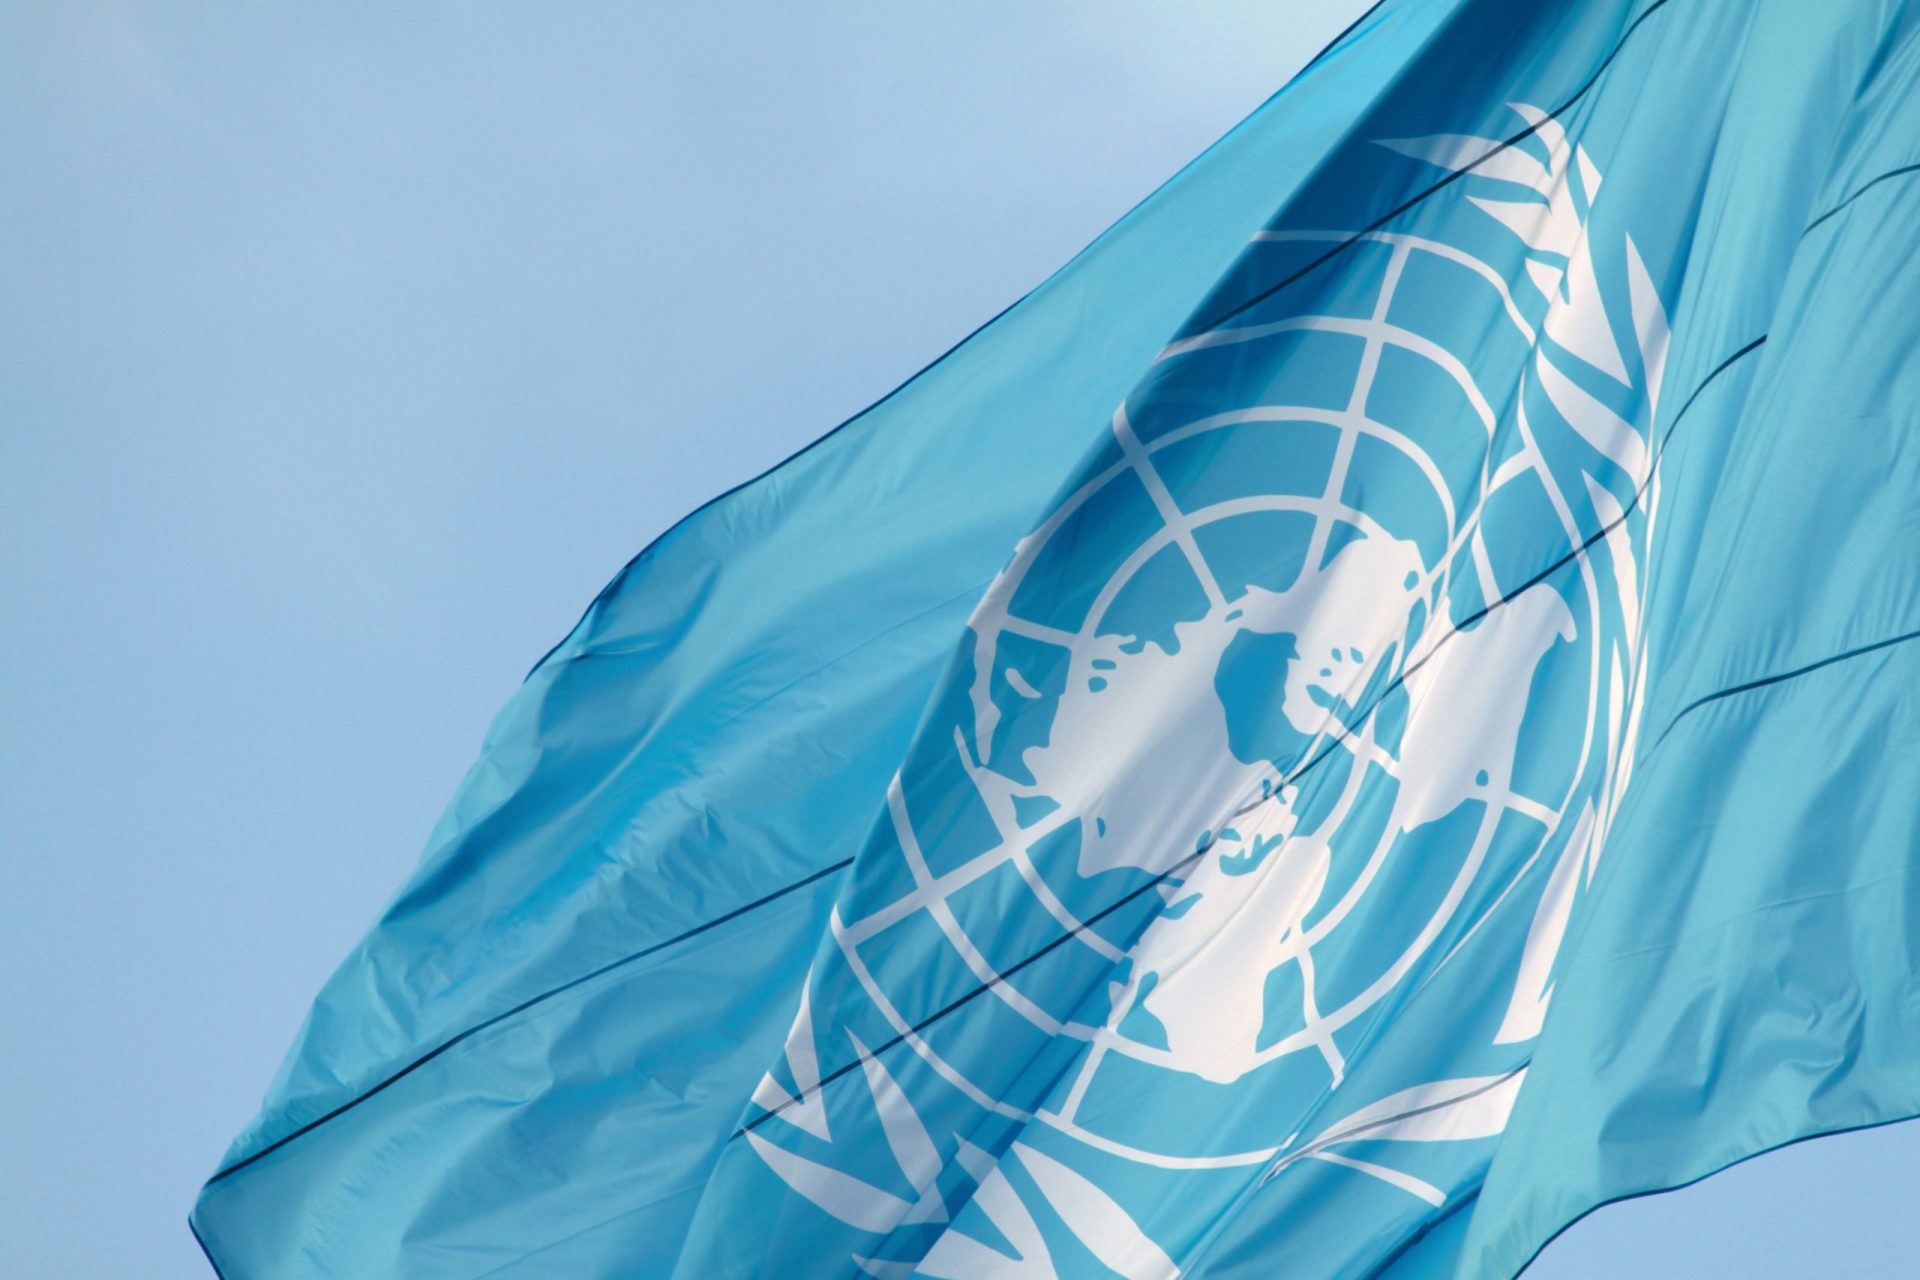 Timor-Leste recebe1,8 milhões de euros da ONU como apoio de emergência